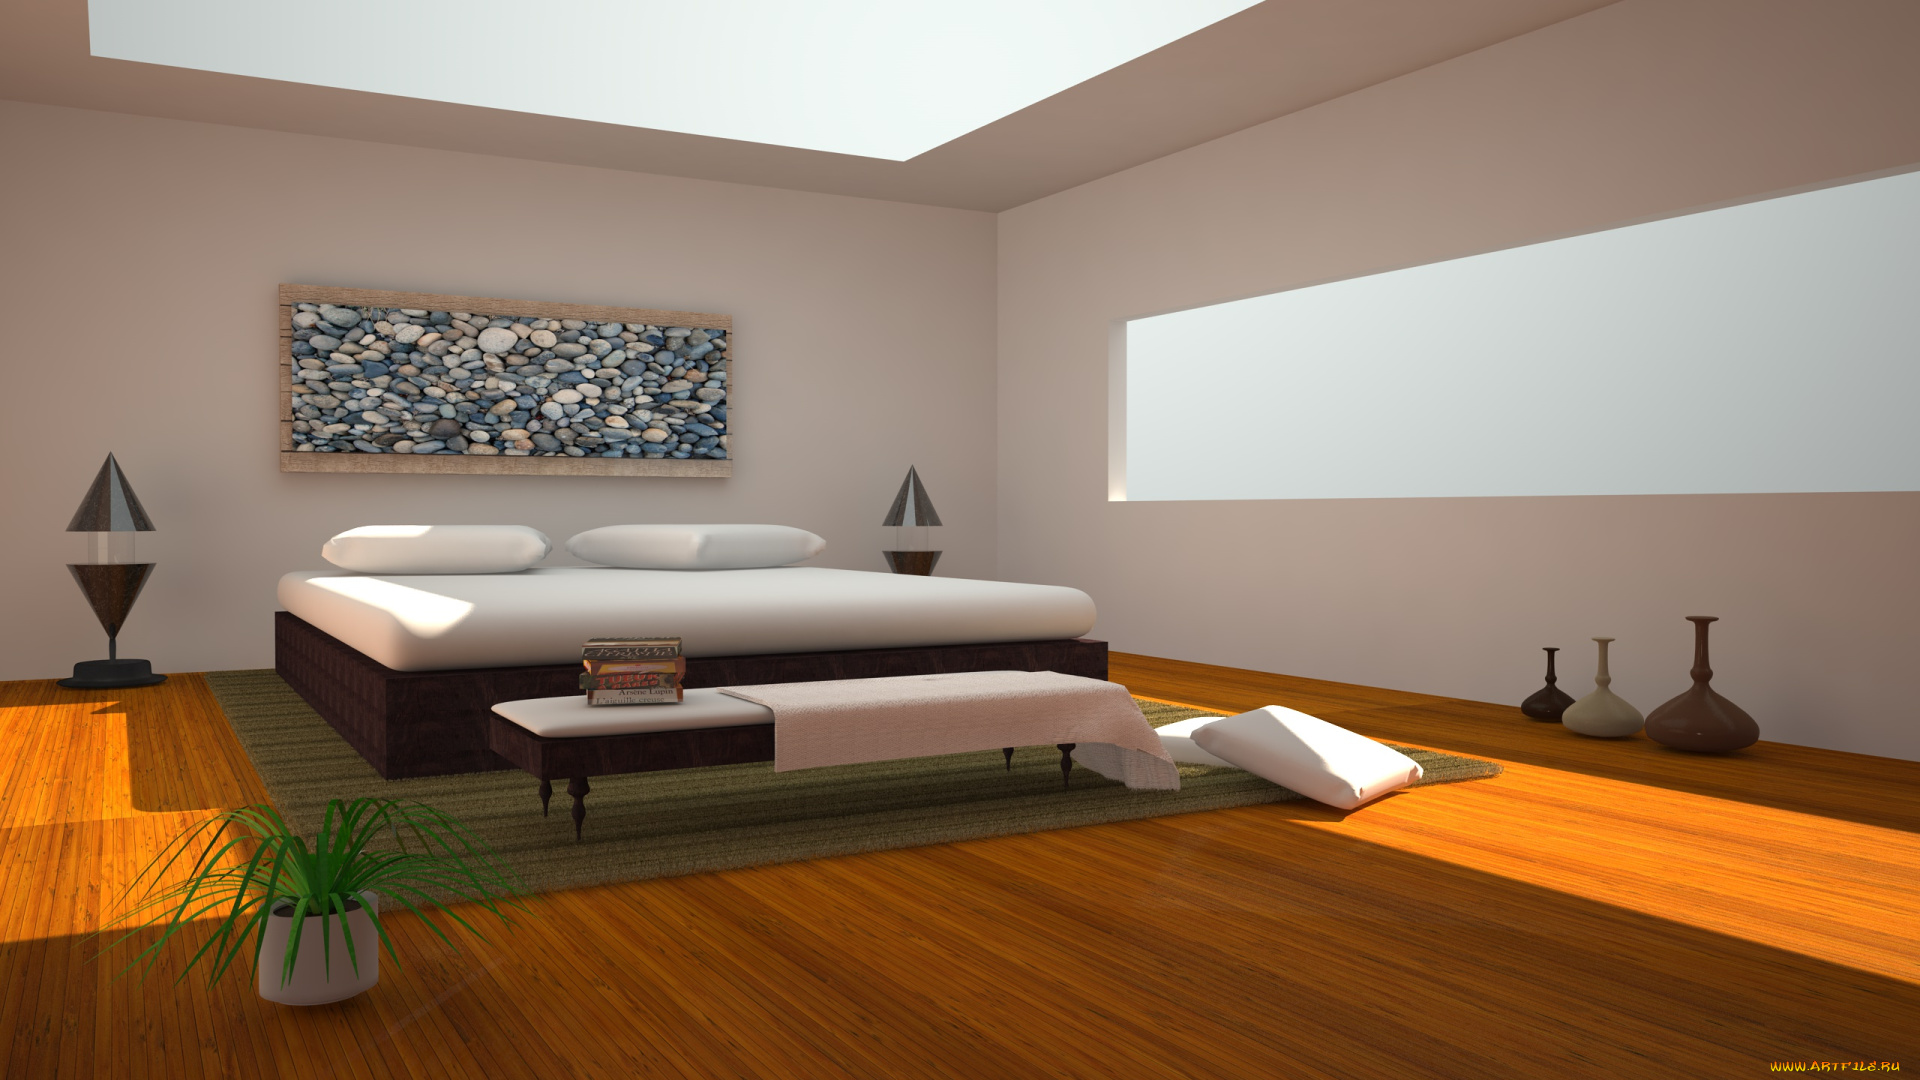 3д, графика, realism, реализм, комната, кровать, стол, вазы, растение